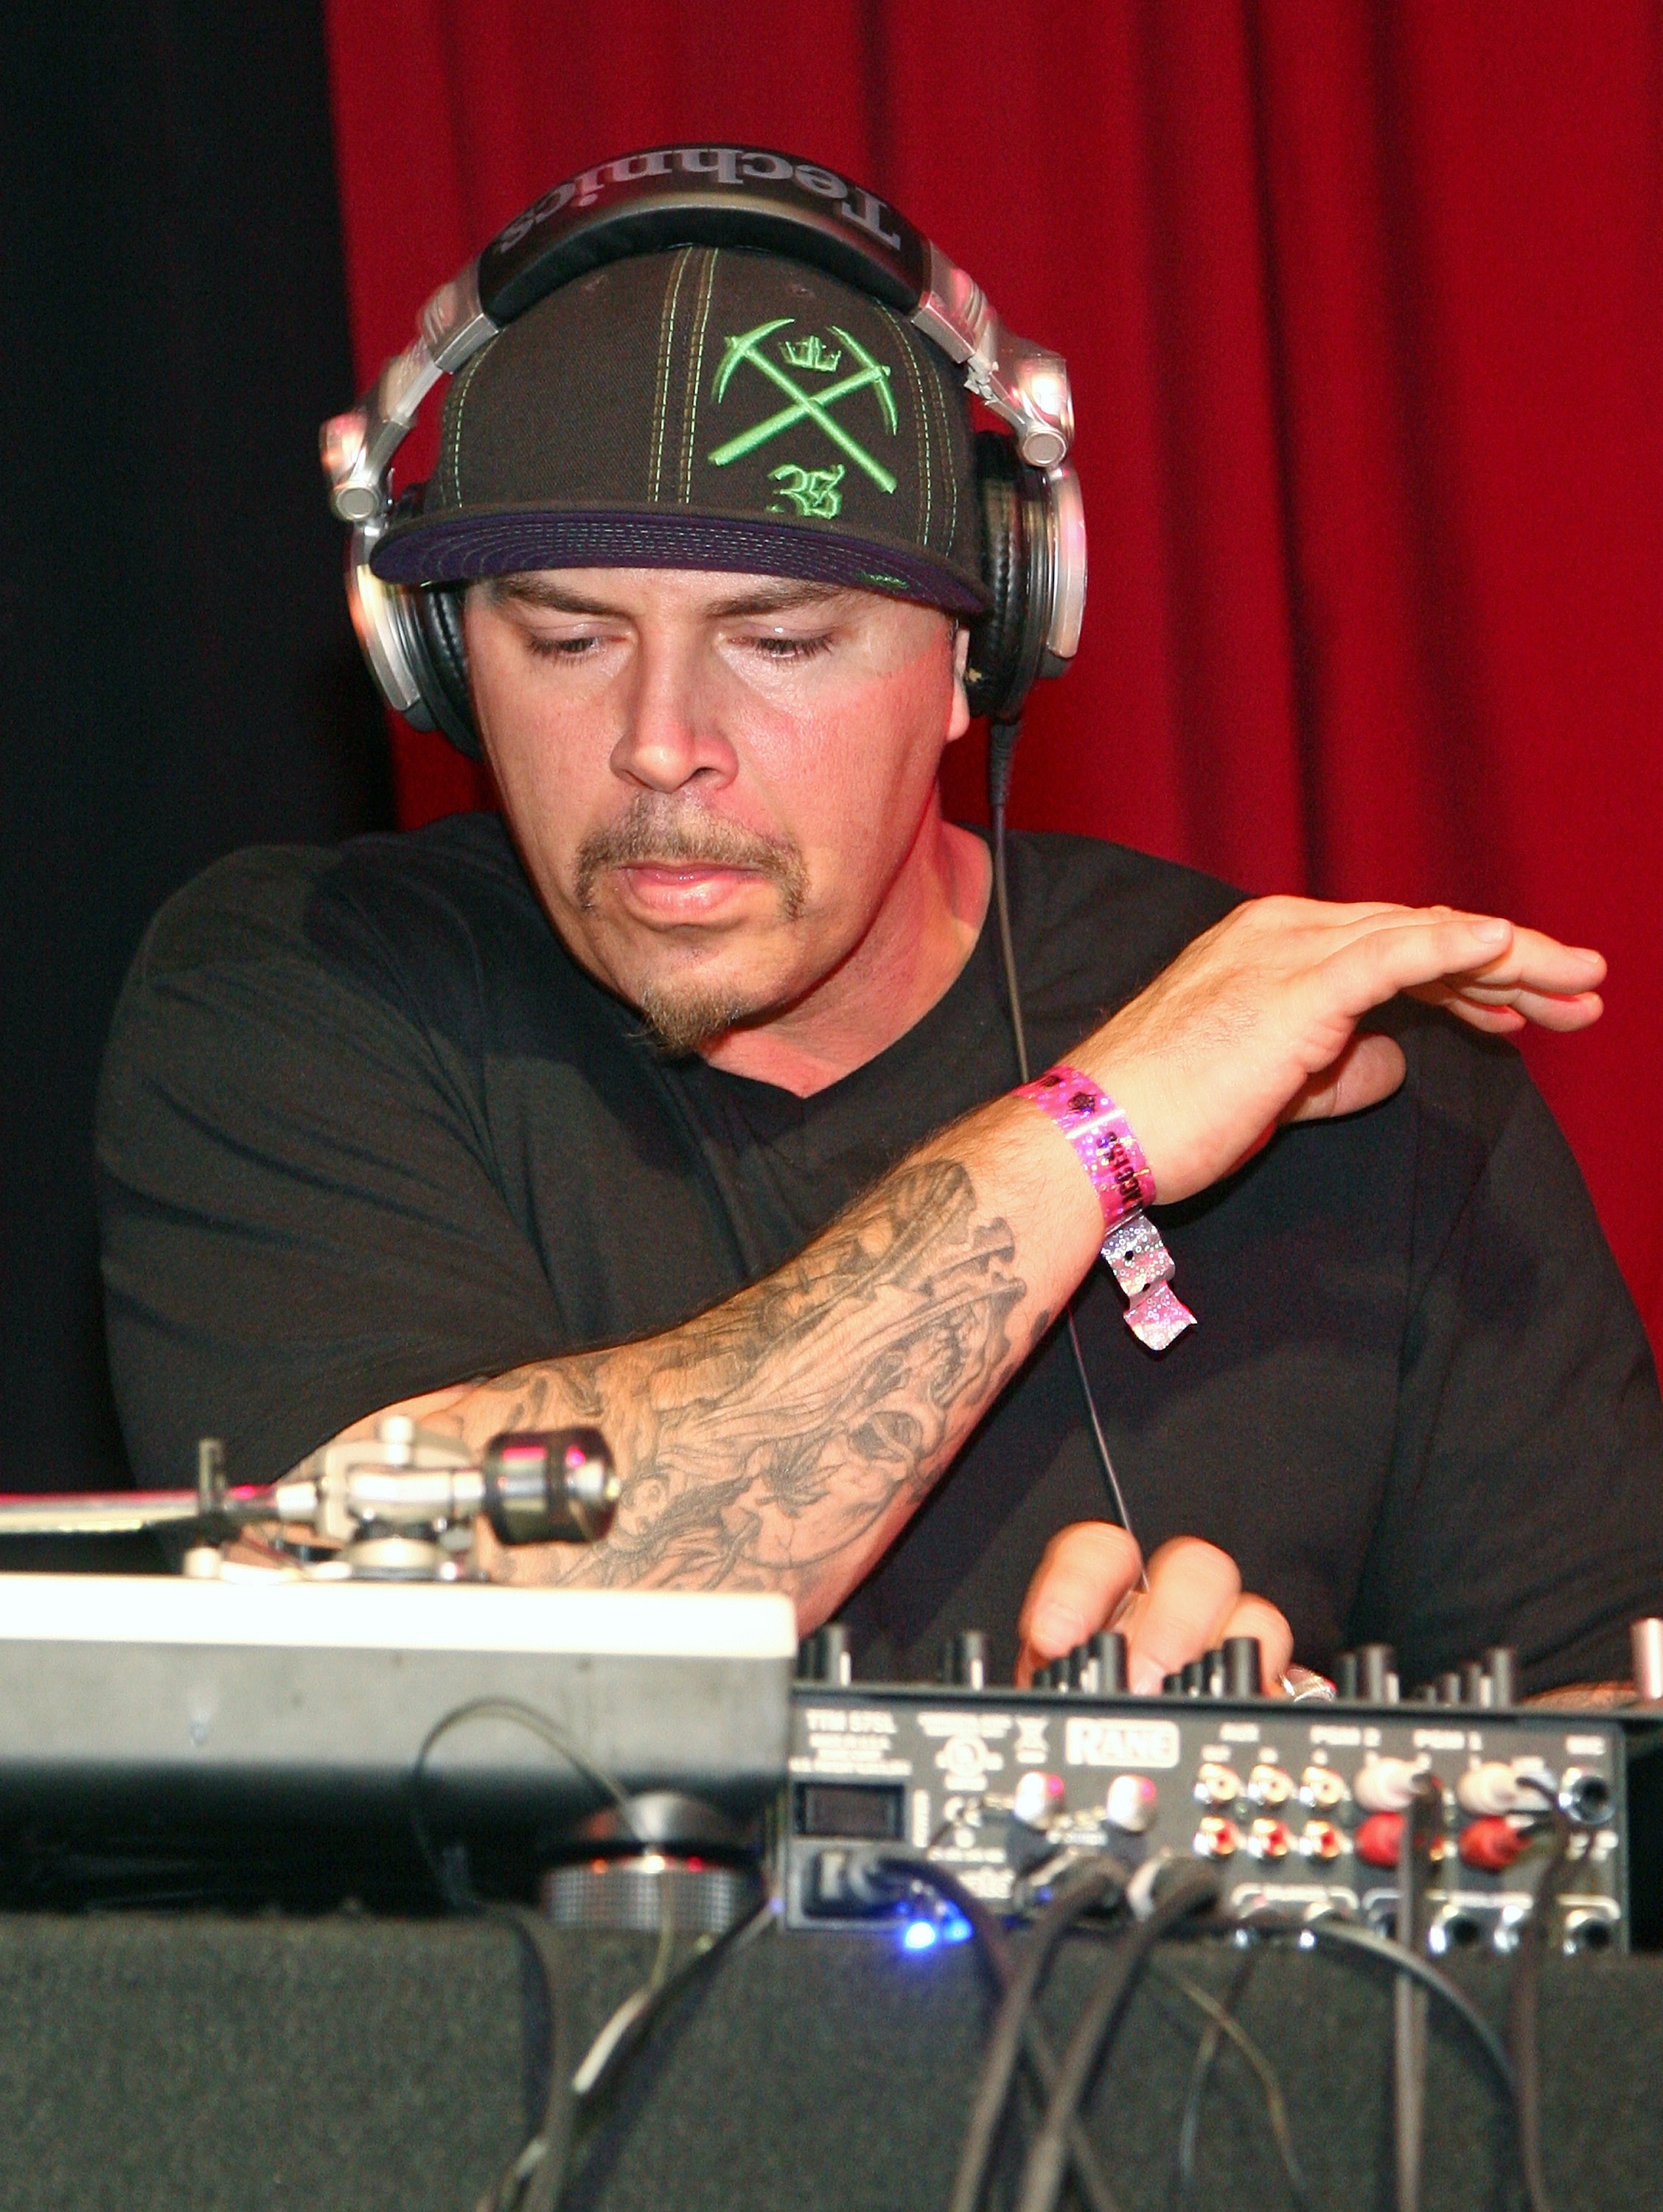 DJ Muggs